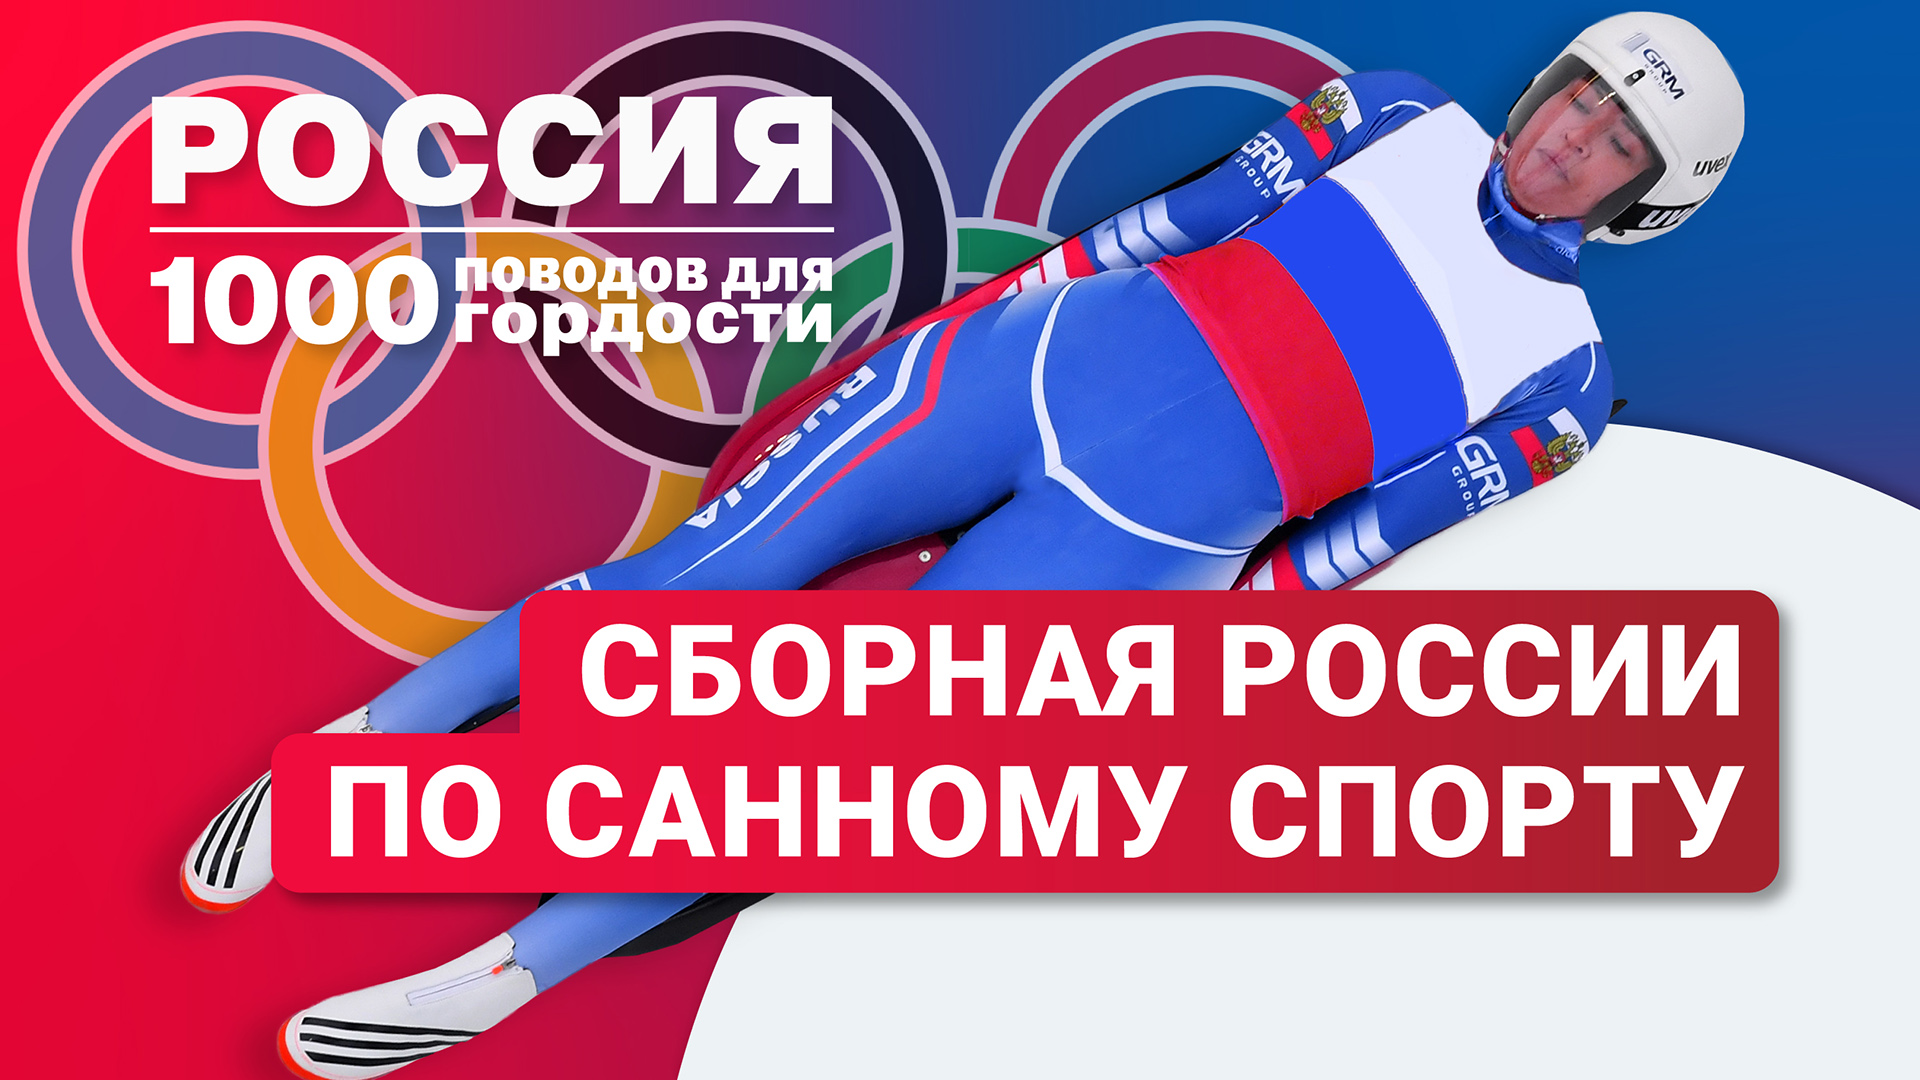 Сборная России по санному спорту